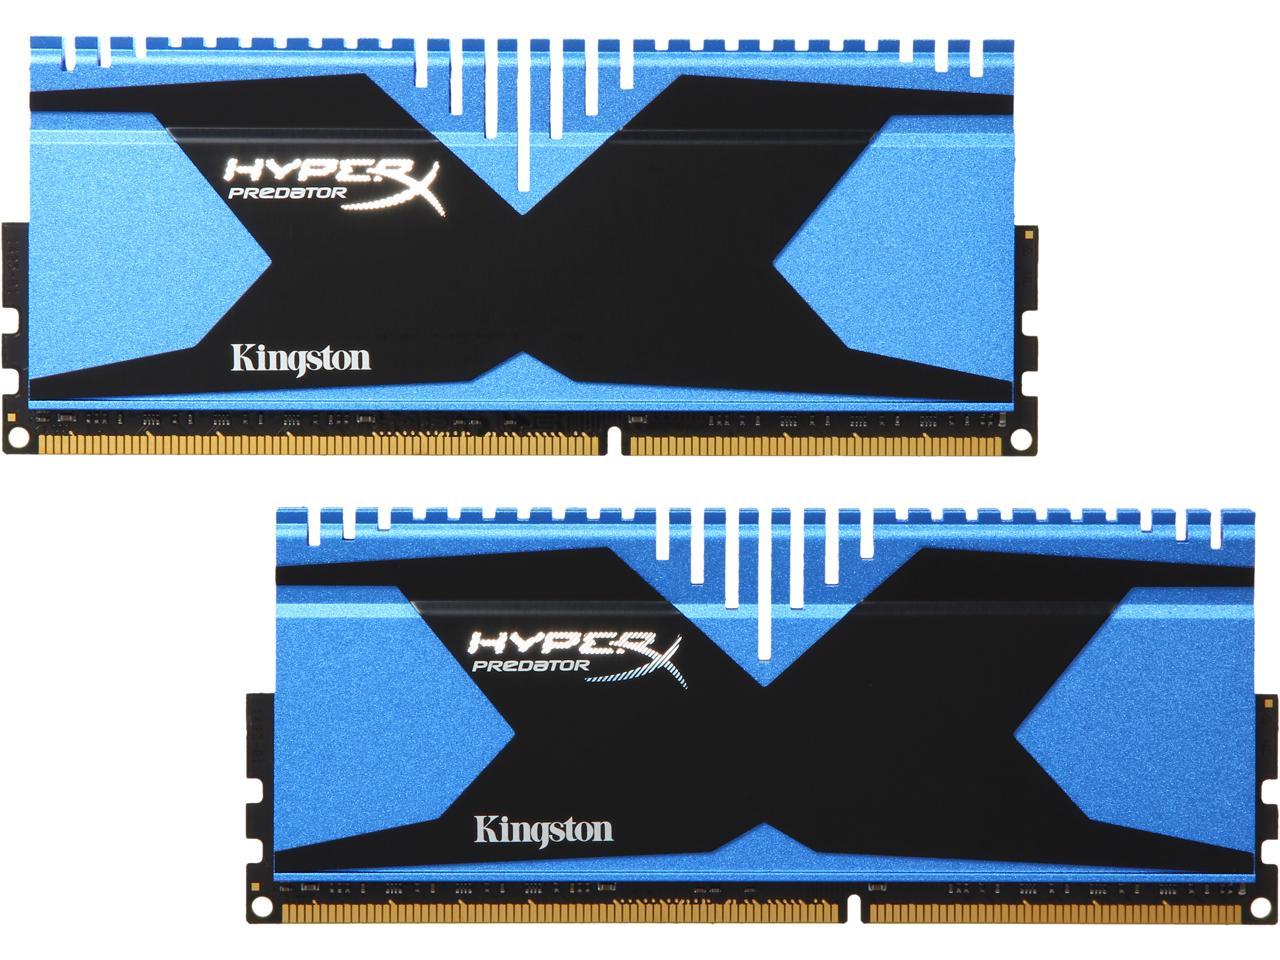 Afleiden maatschappij hoofdonderwijzer HyperX Predator 16GB (2 x 8GB) DDR3 2133 Desktop Memory Model  HX321C11T2K2/16 - Newegg.com